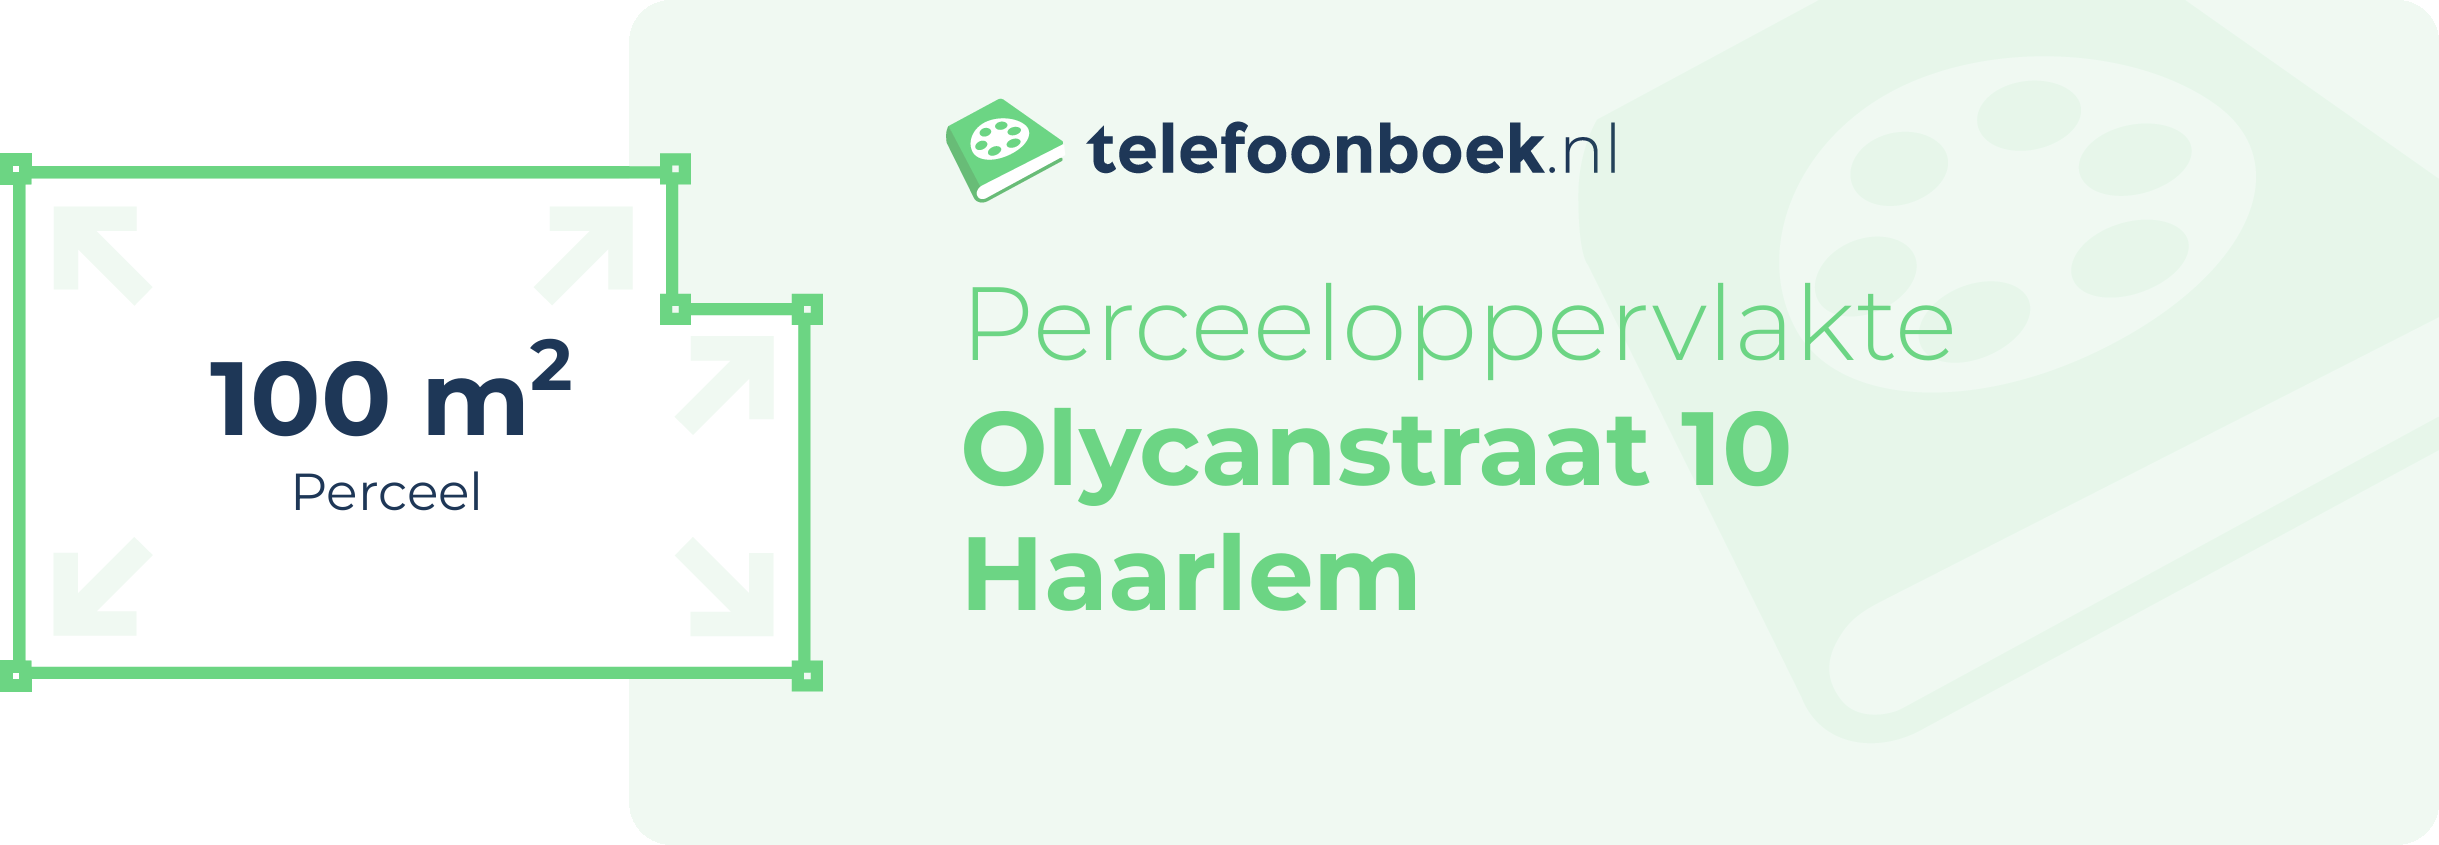 Perceeloppervlakte Olycanstraat 10 Haarlem